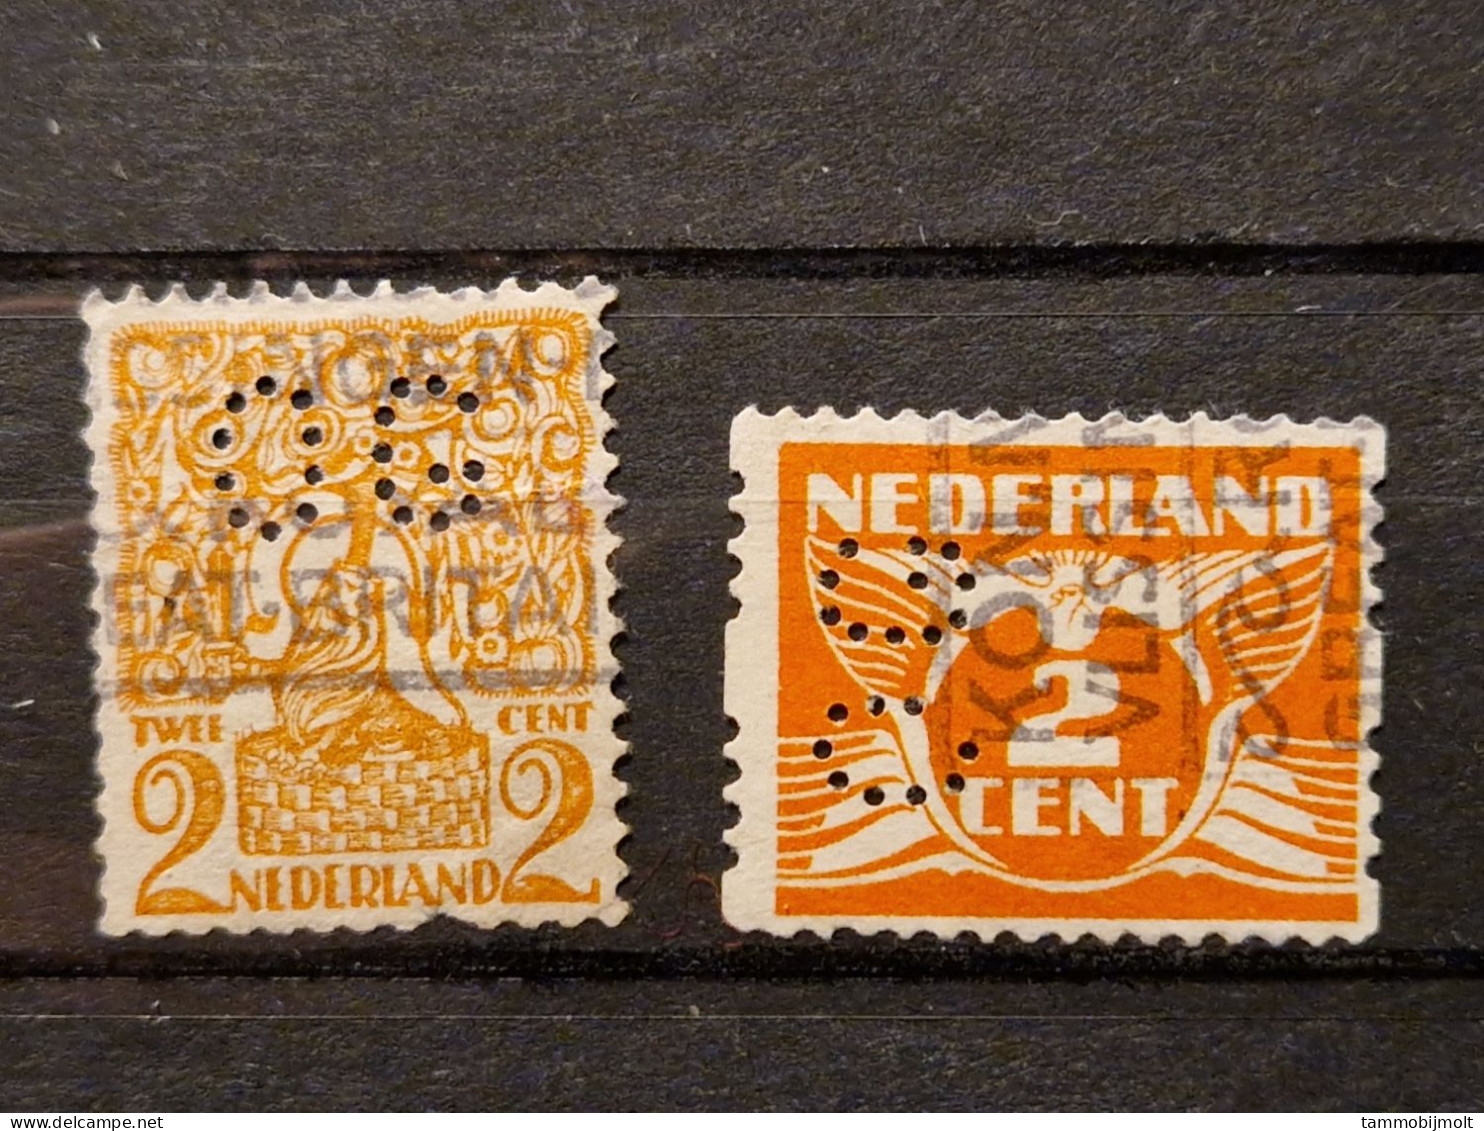 Netherlands, Nederland; Roltanding; POKO Perfins OG; 2 Different Stamps - Ohne Zuordnung